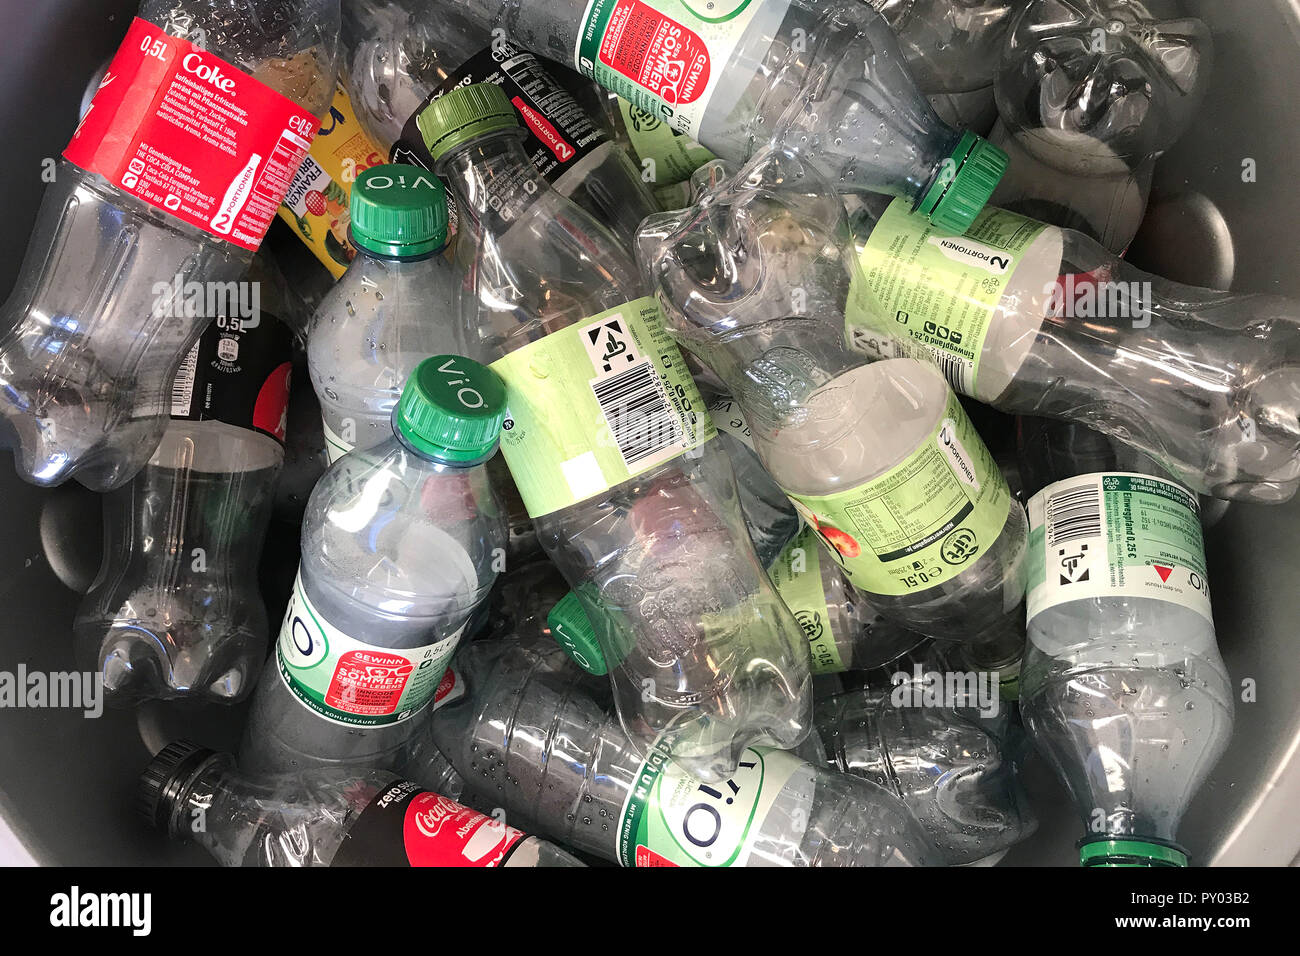 https://c8.alamy.com/compde/py03b2/munchen-deutschland-25-okt-2018-leere-plastikflaschen-in-einen-sammelbehalter-pfandflaschen-flaschen-pet-flaschen-kunststoff-kunststoff-kunststoff-recycling-einweg-mehrweg-pfandflaschen-verwendung-der-weltweiten-kredit-dpaalamy-leben-nachrichten-py03b2.jpg